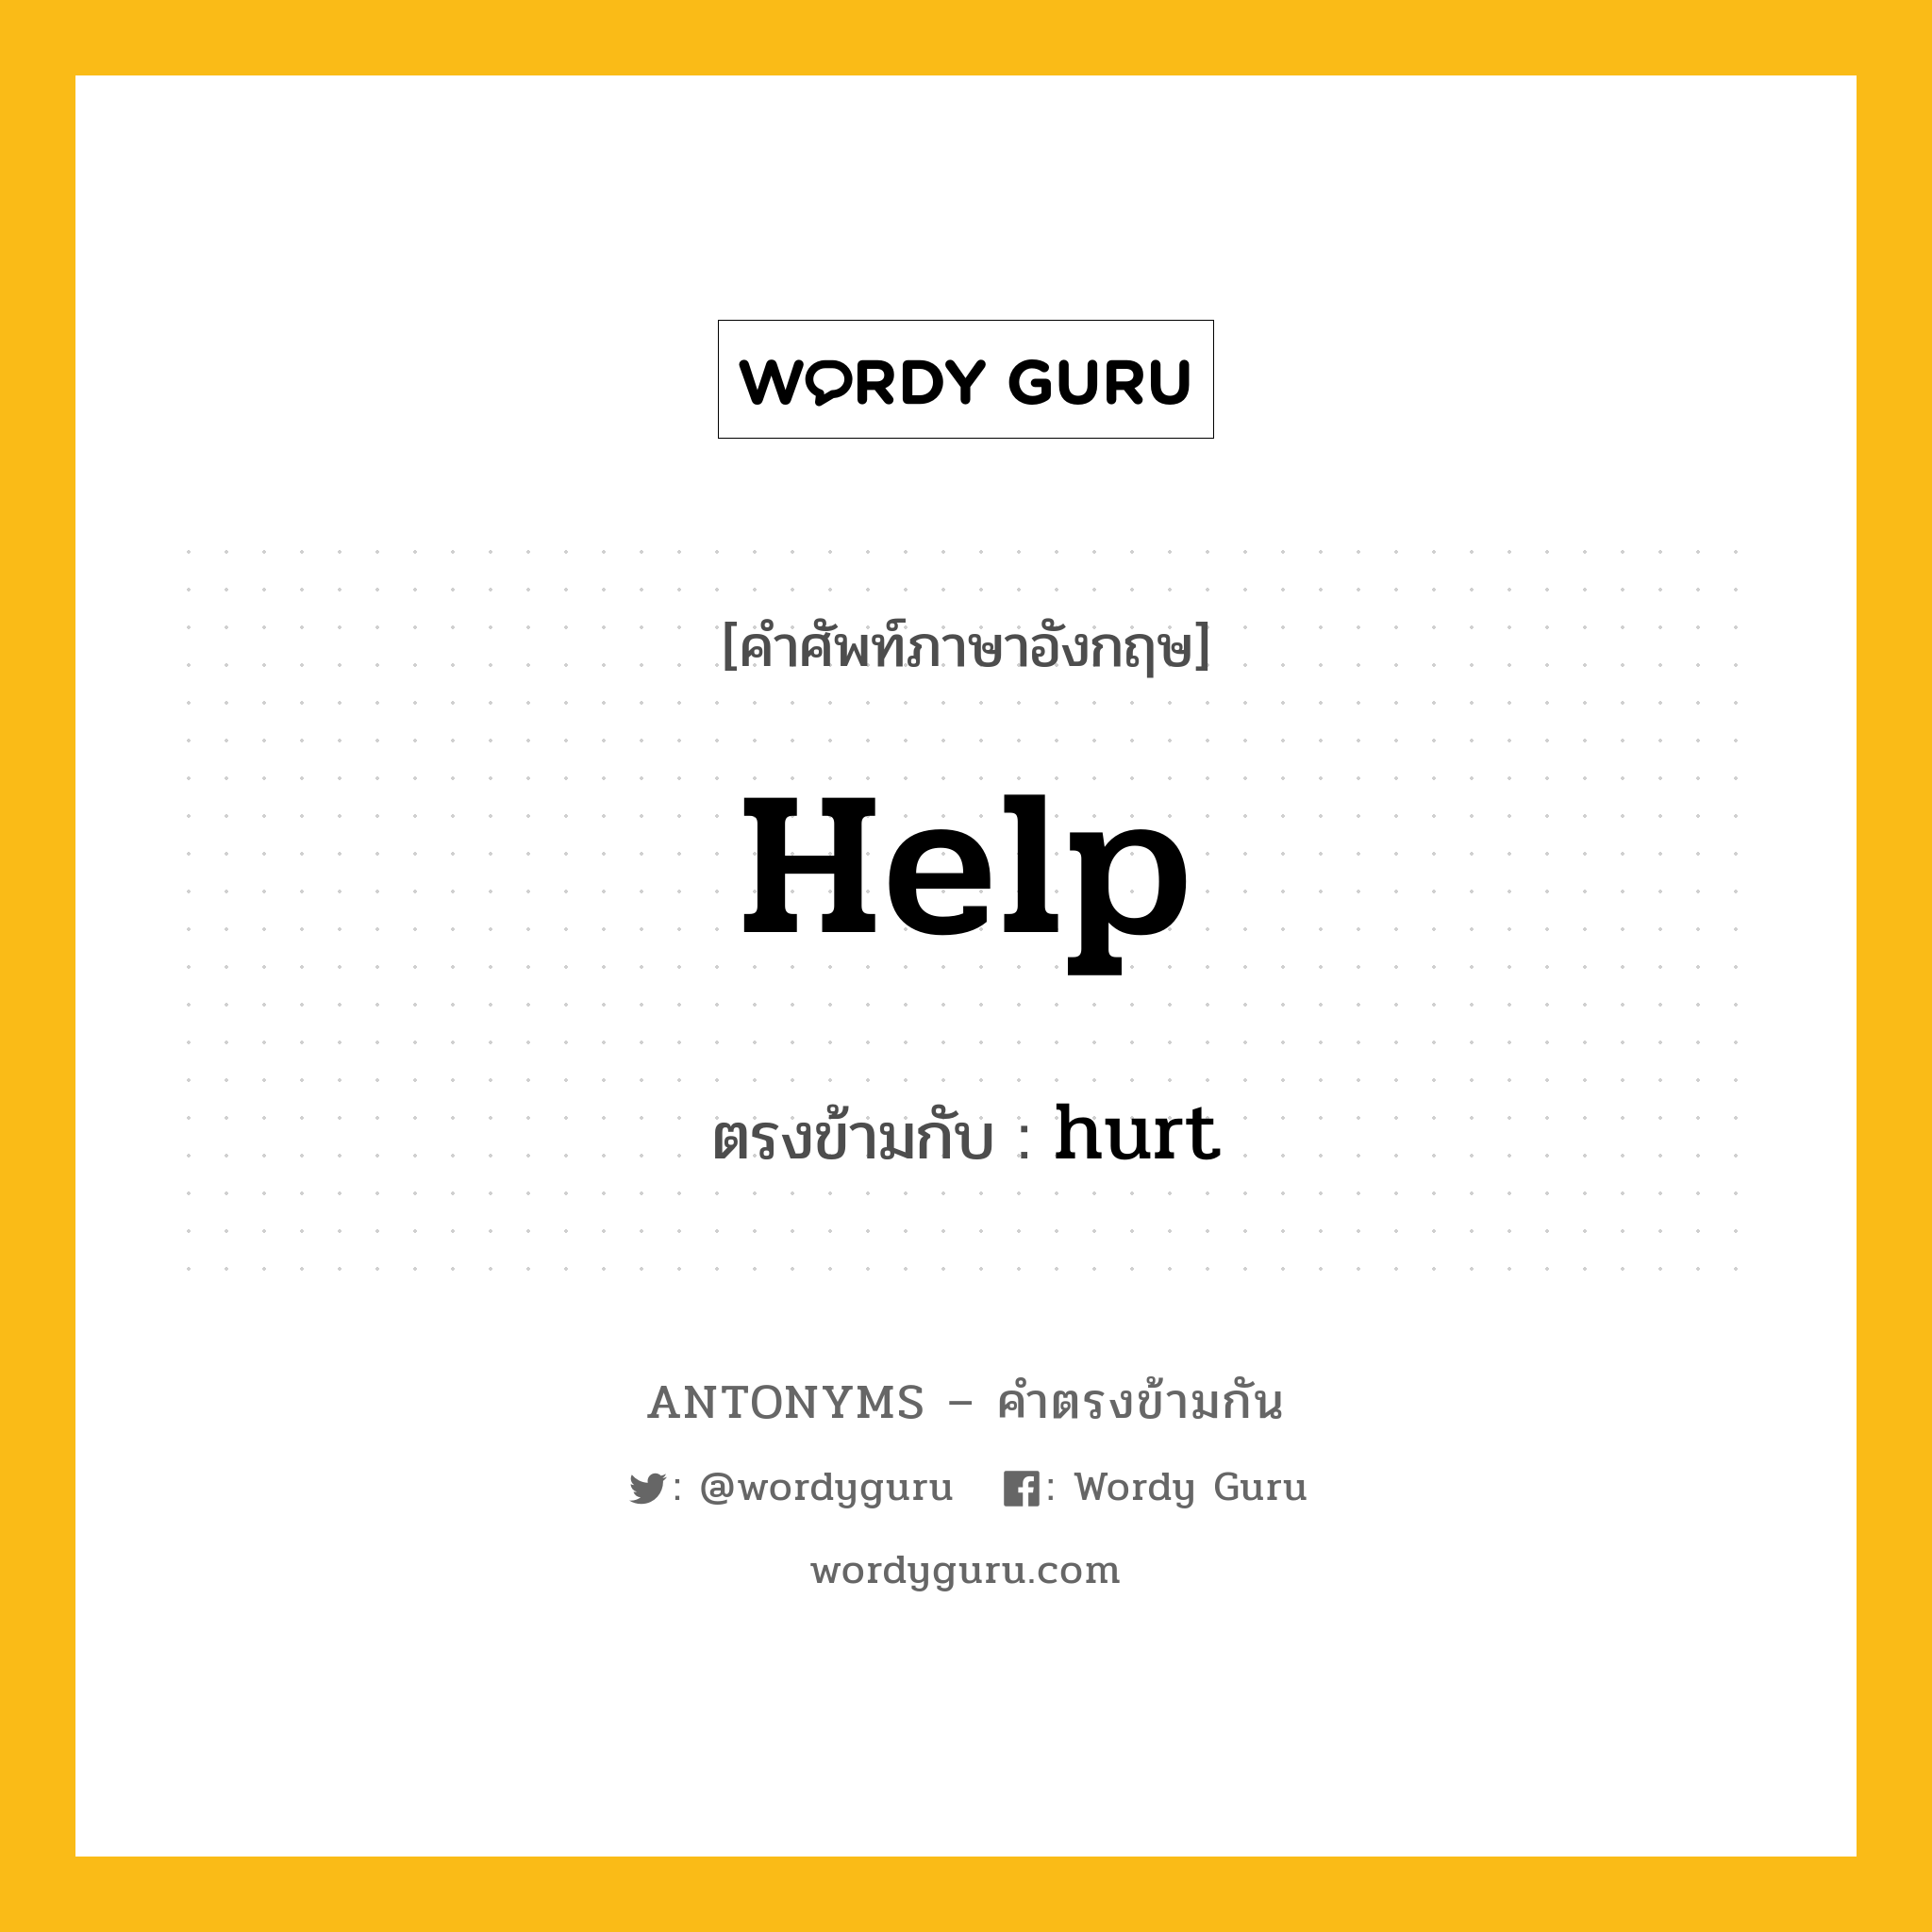 help เป็นคำตรงข้ามกับคำไหนบ้าง?, คำศัพท์ภาษาอังกฤษ help ตรงข้ามกับ hurt หมวด hurt